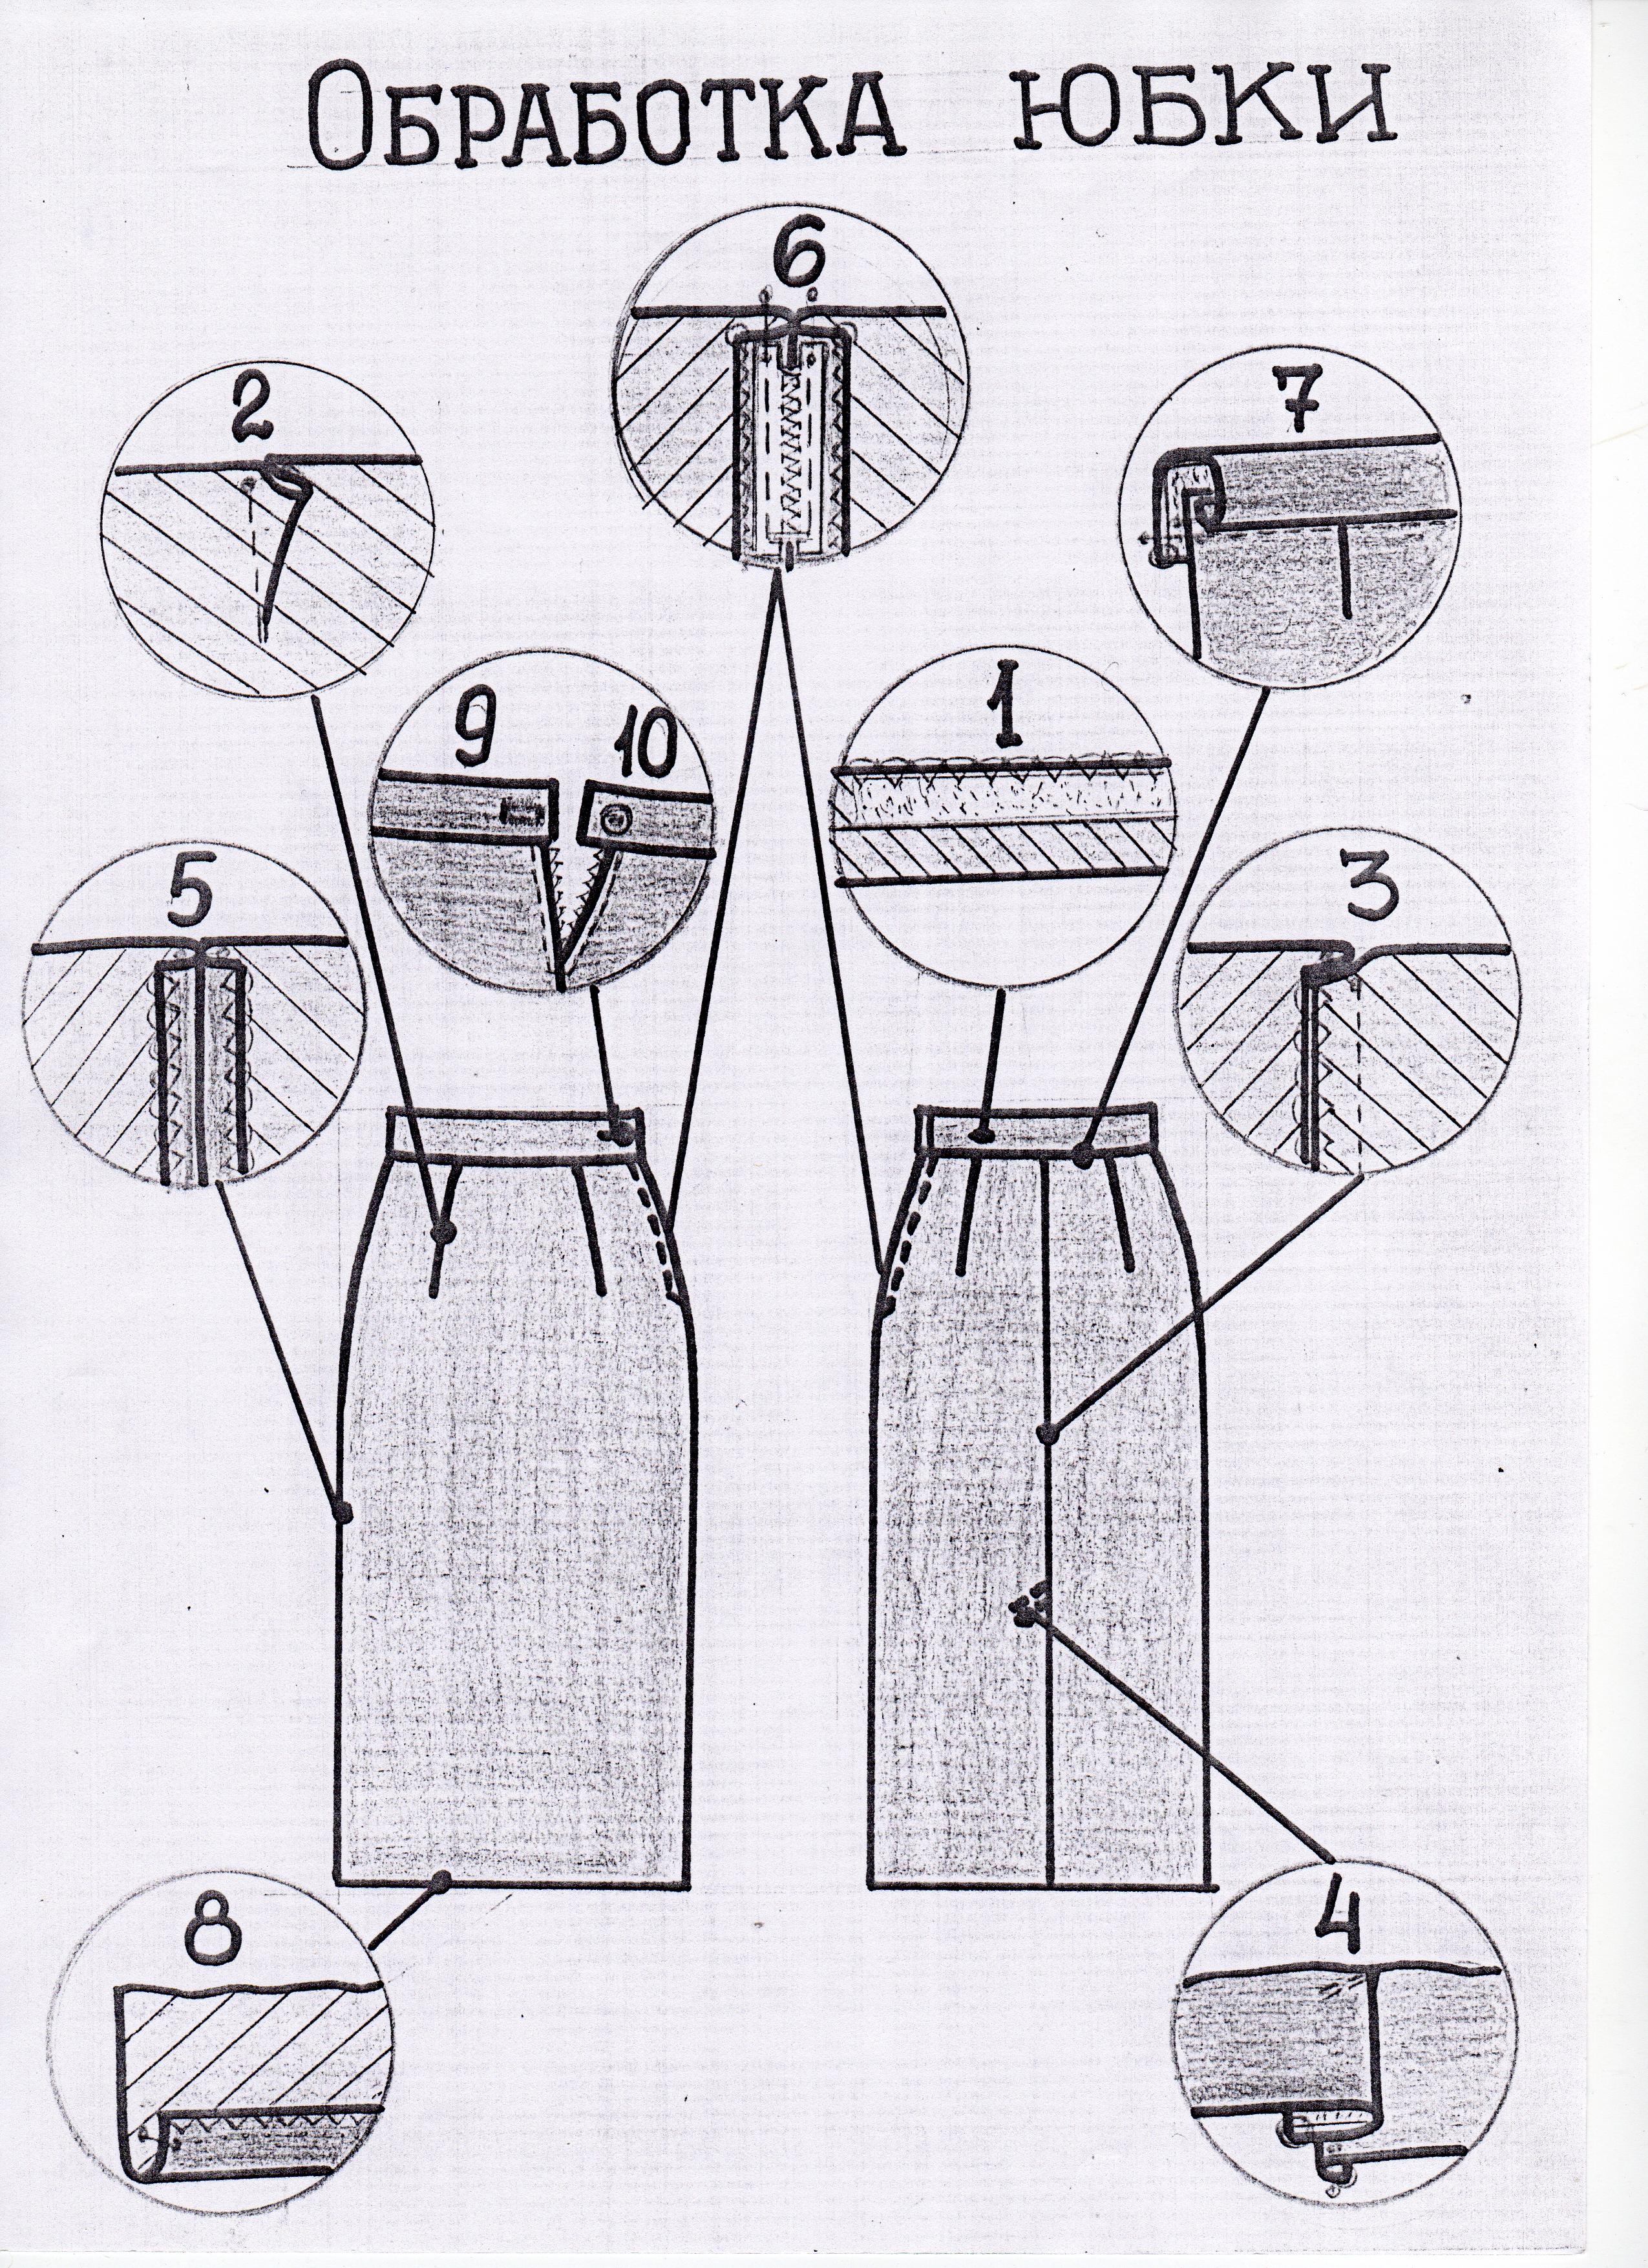 Костюм представляющий собой соединение верхней части одежды